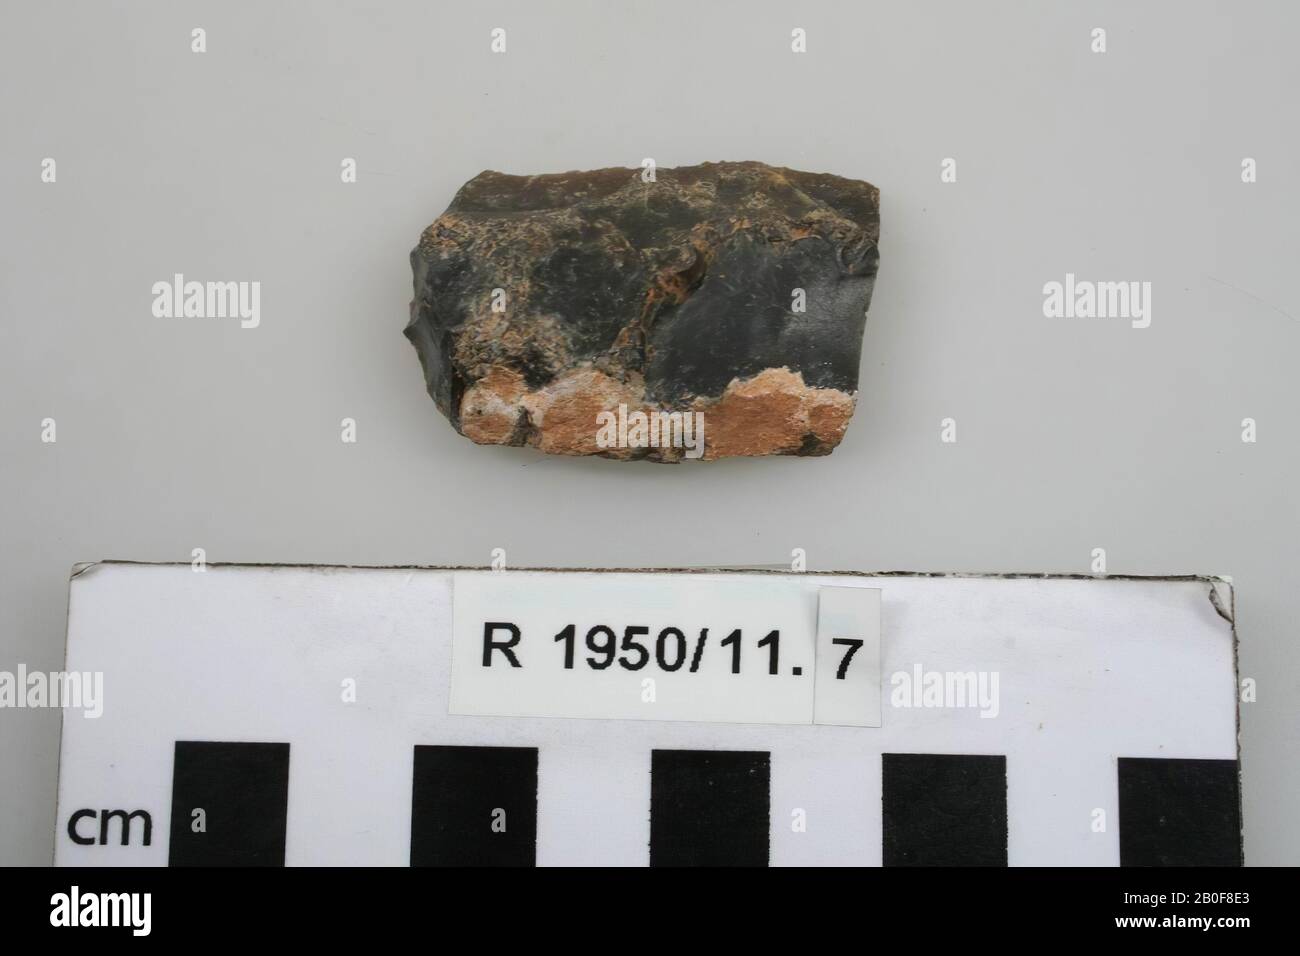 Grattoir de flint, grattoir, pierre, flint, 4,4 x 1 x 0,8 cm, préhistorique, France, inconnu, inconnu, inconnu Banque D'Images